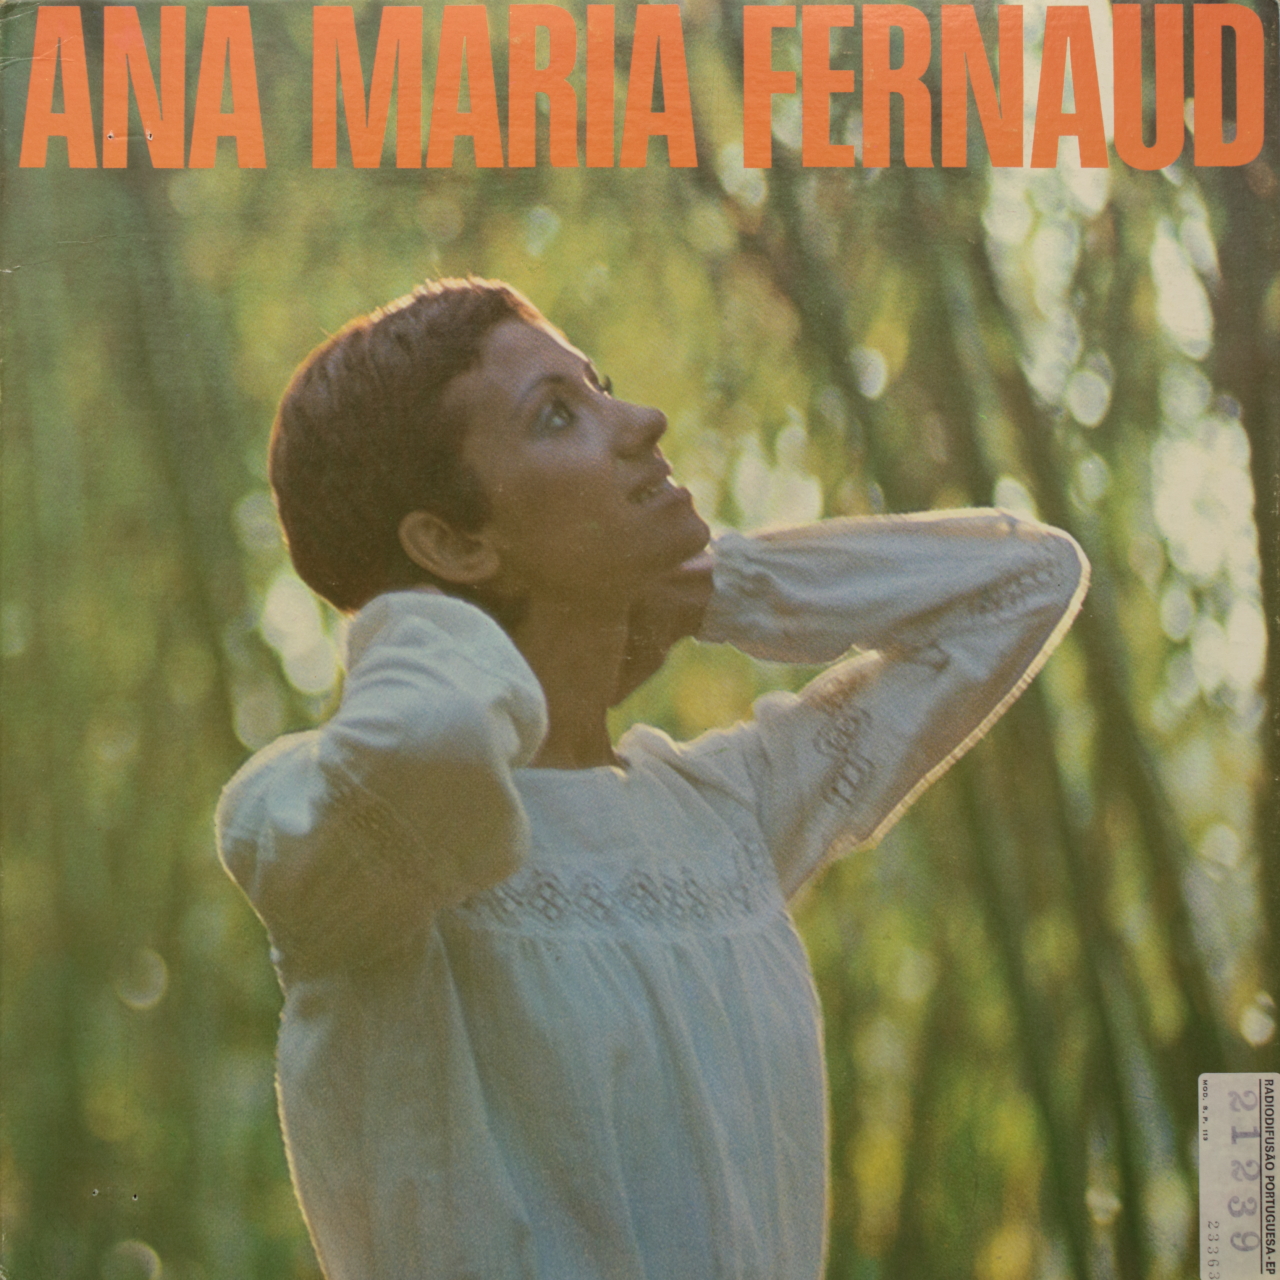 Ana Maria Fernaud